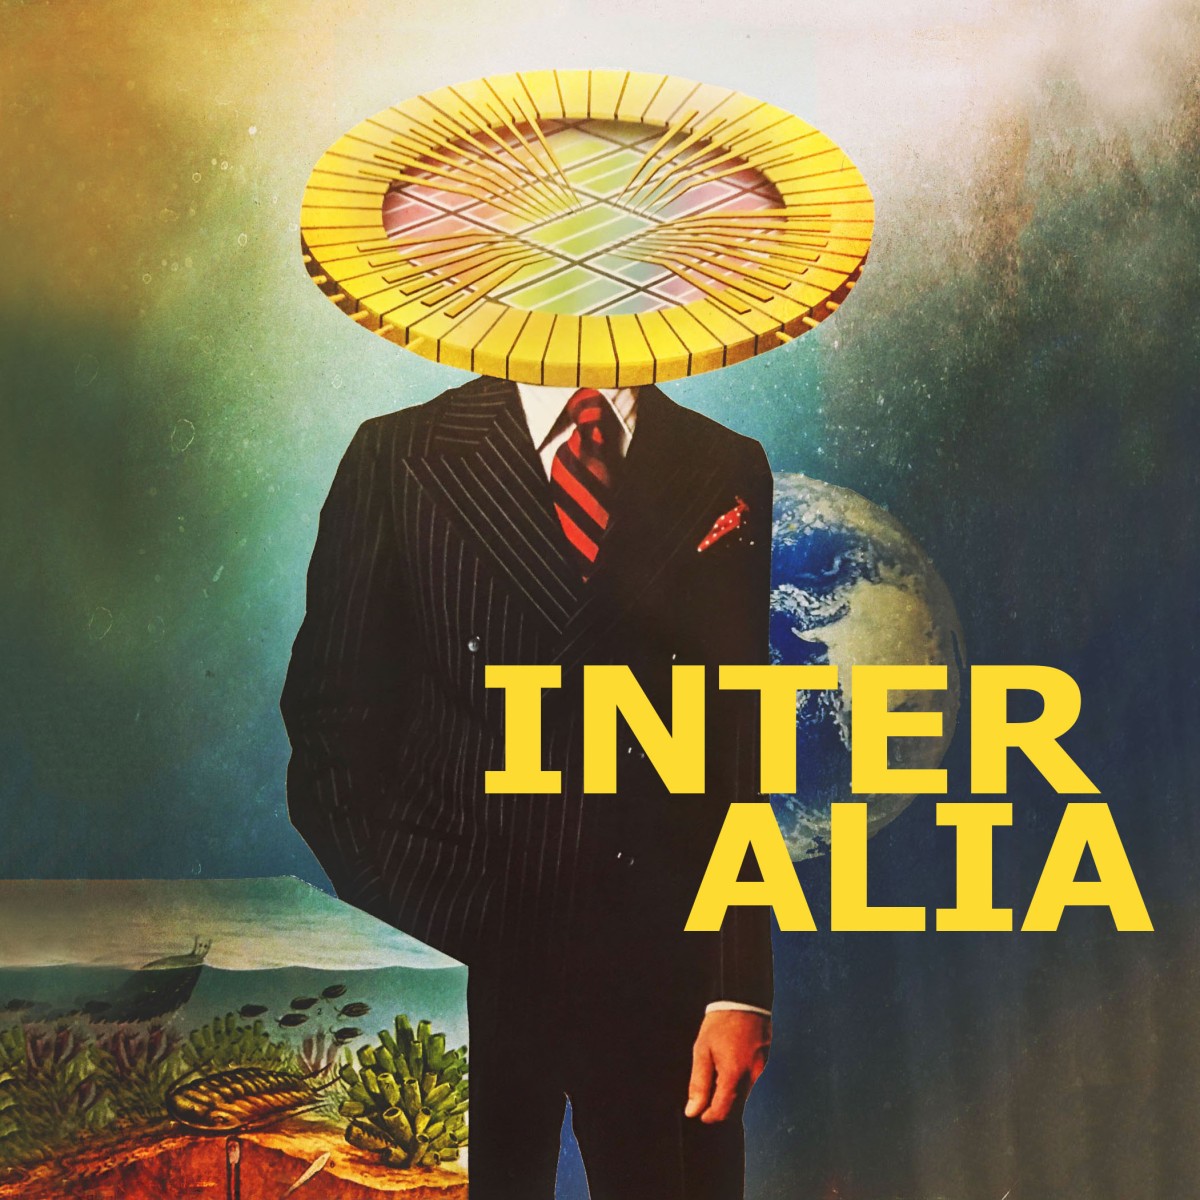 Inter alia. Inter Alia examples.